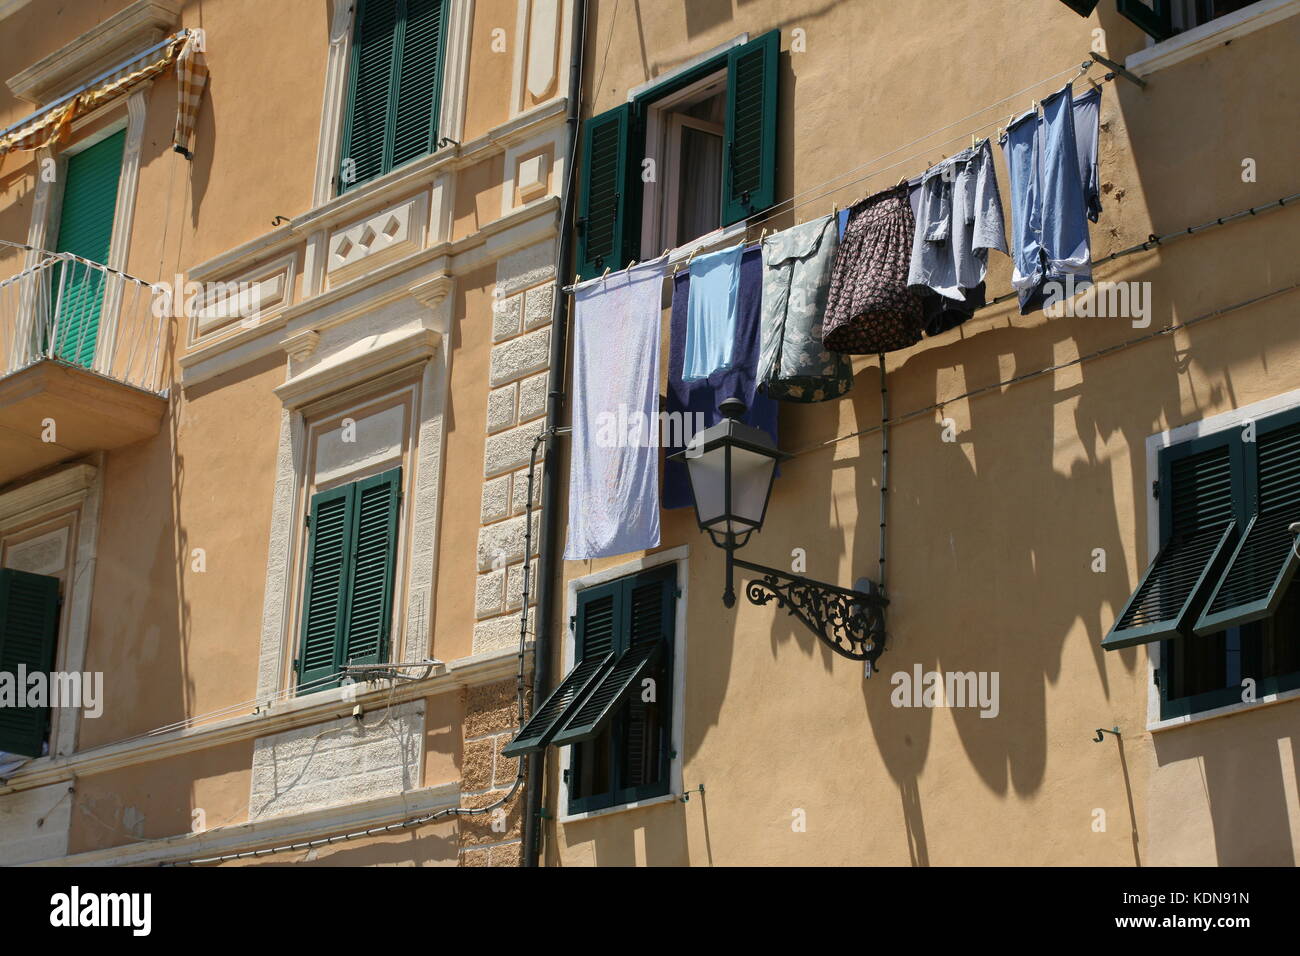 Häuserfront mit Fenster und Wäscheleine in Italien - Hausfront mit Fenster und Wäscheleine in italien Stockfoto